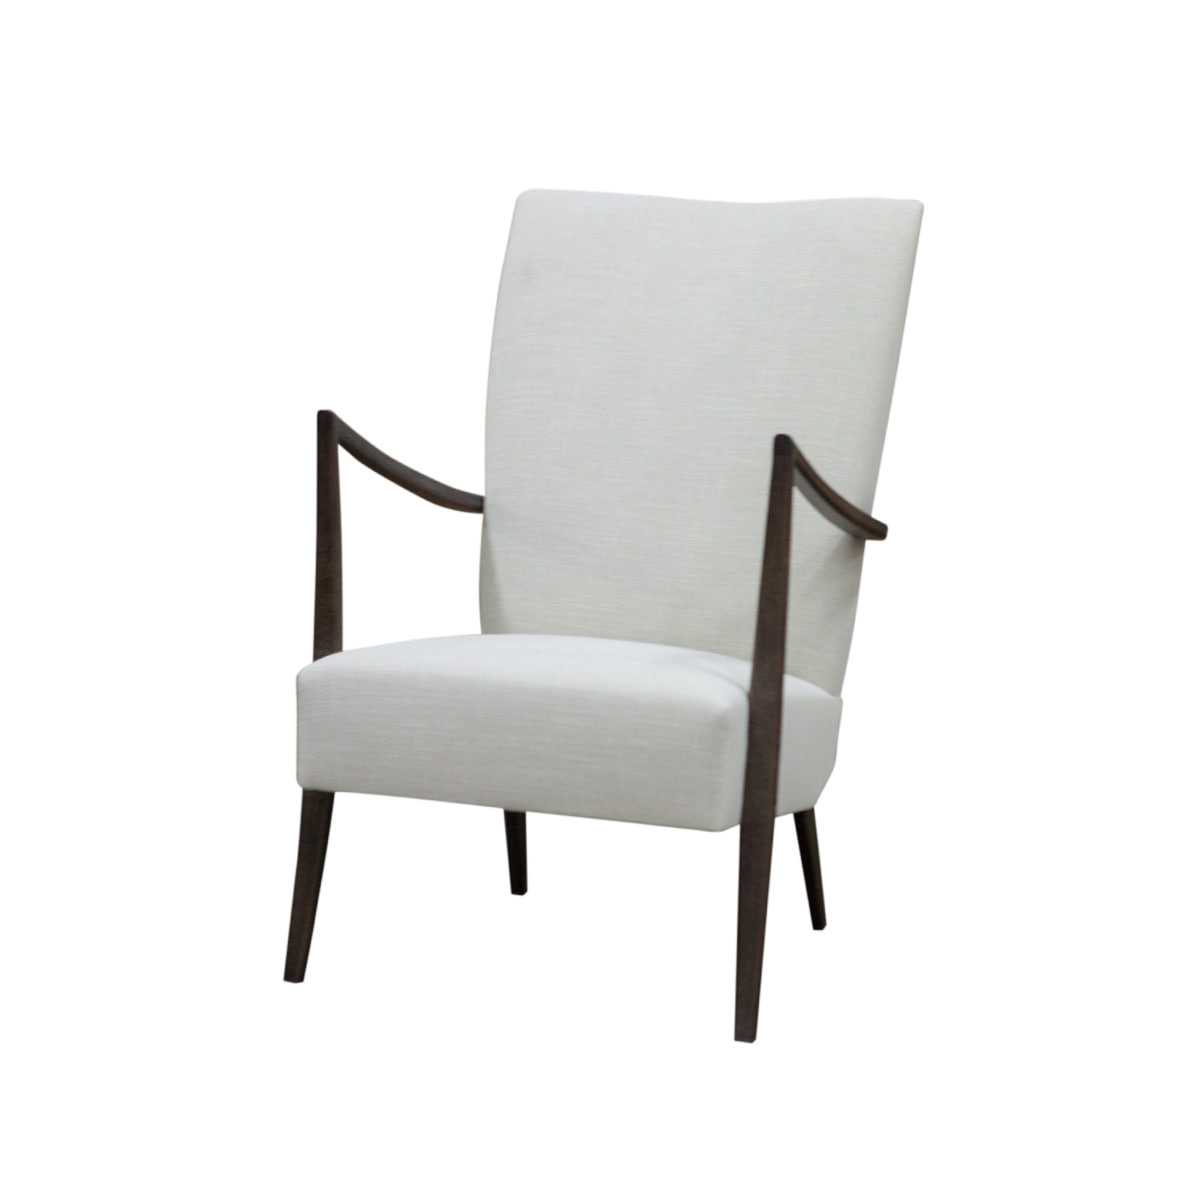 Zacc collection by SEDEC W Lounge Chair W 라운지 체어 - J233(내추럴)